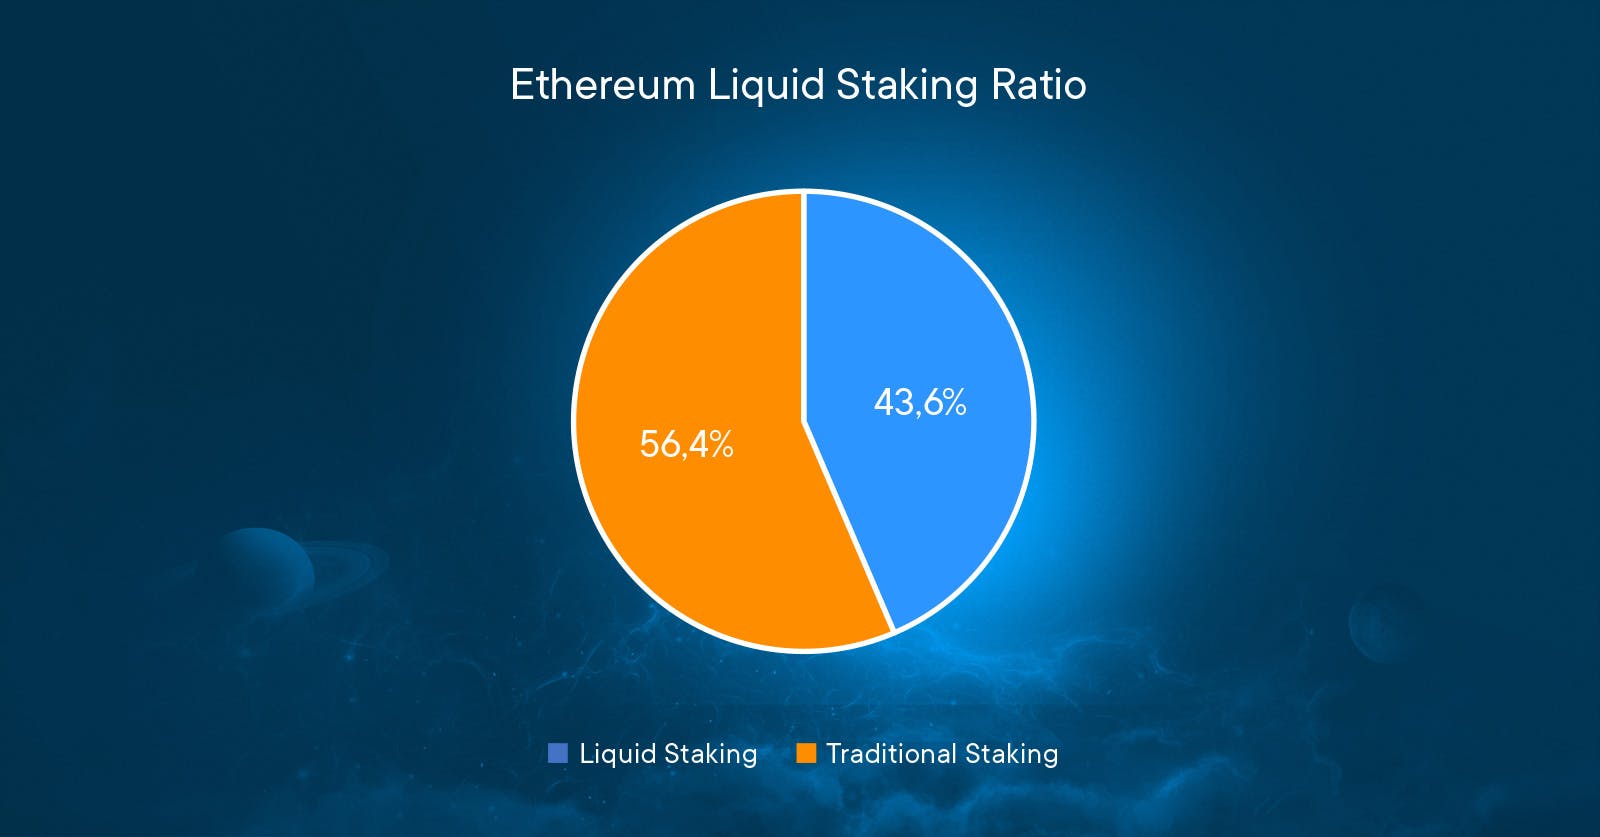 ETH liquid staking ratio